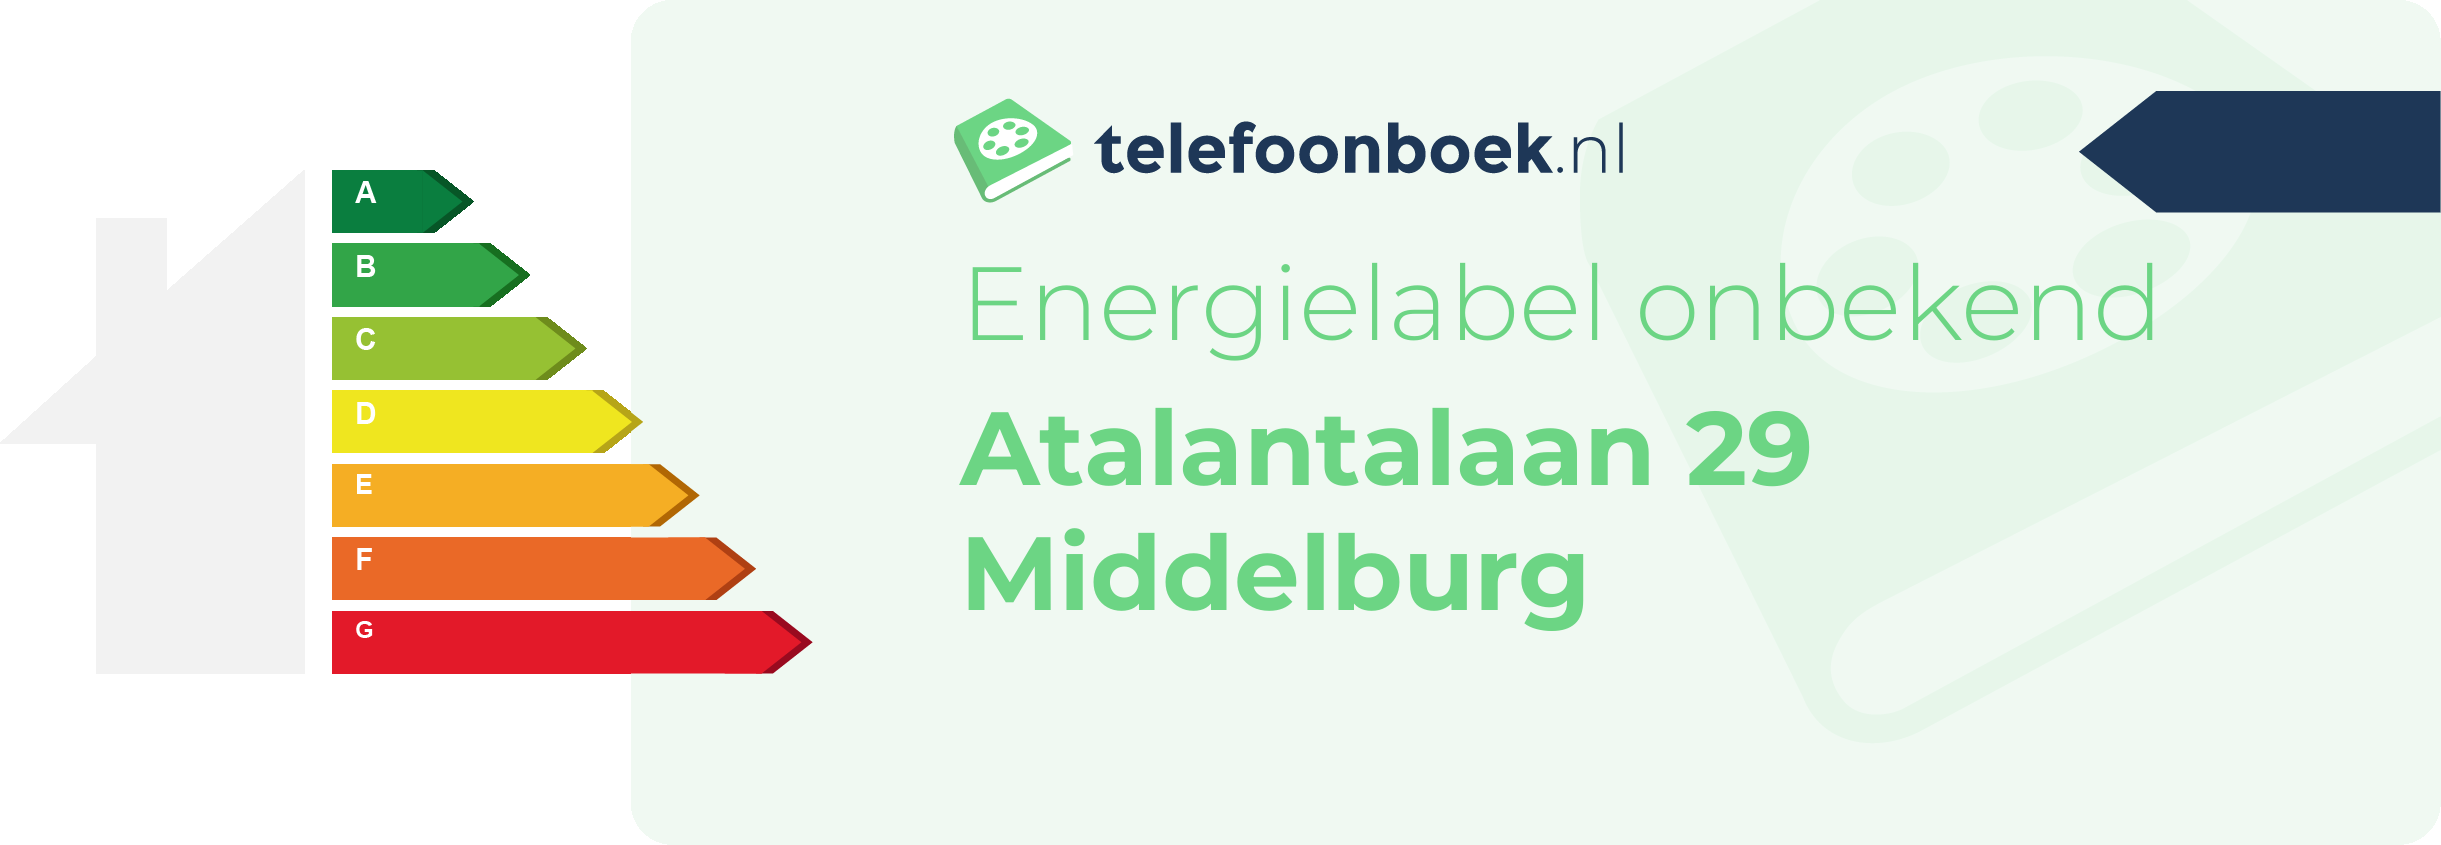 Energielabel Atalantalaan 29 Middelburg